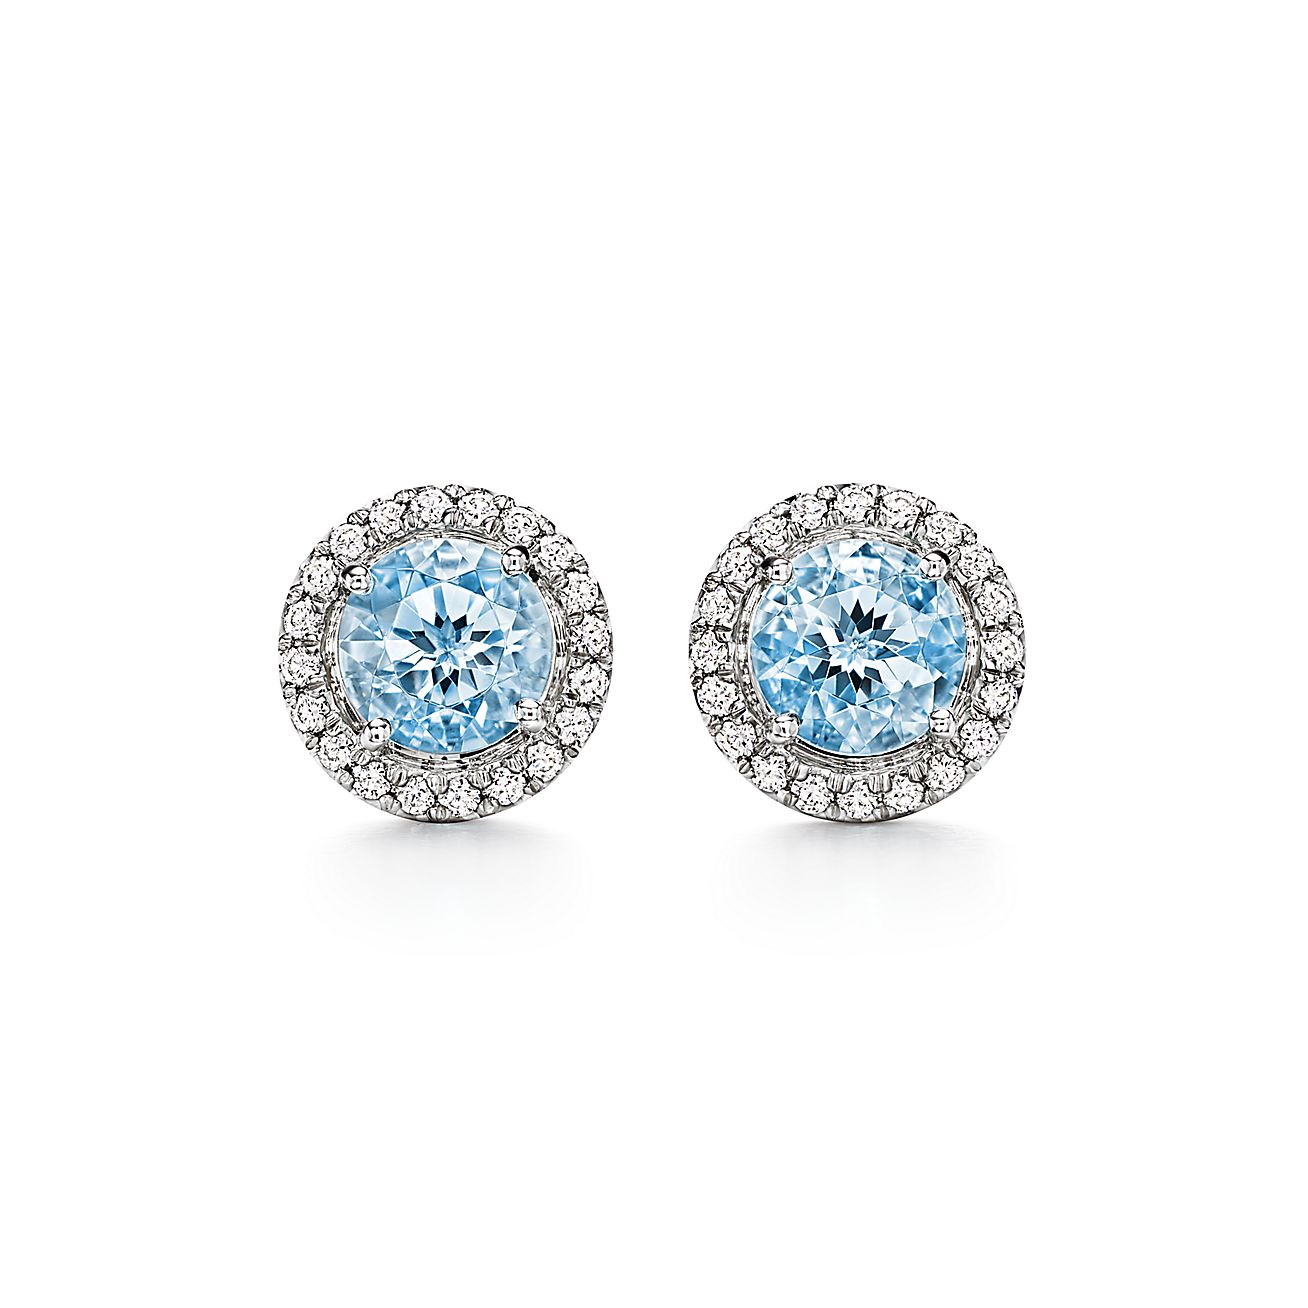 Soleste earrings aquamarines diamonds